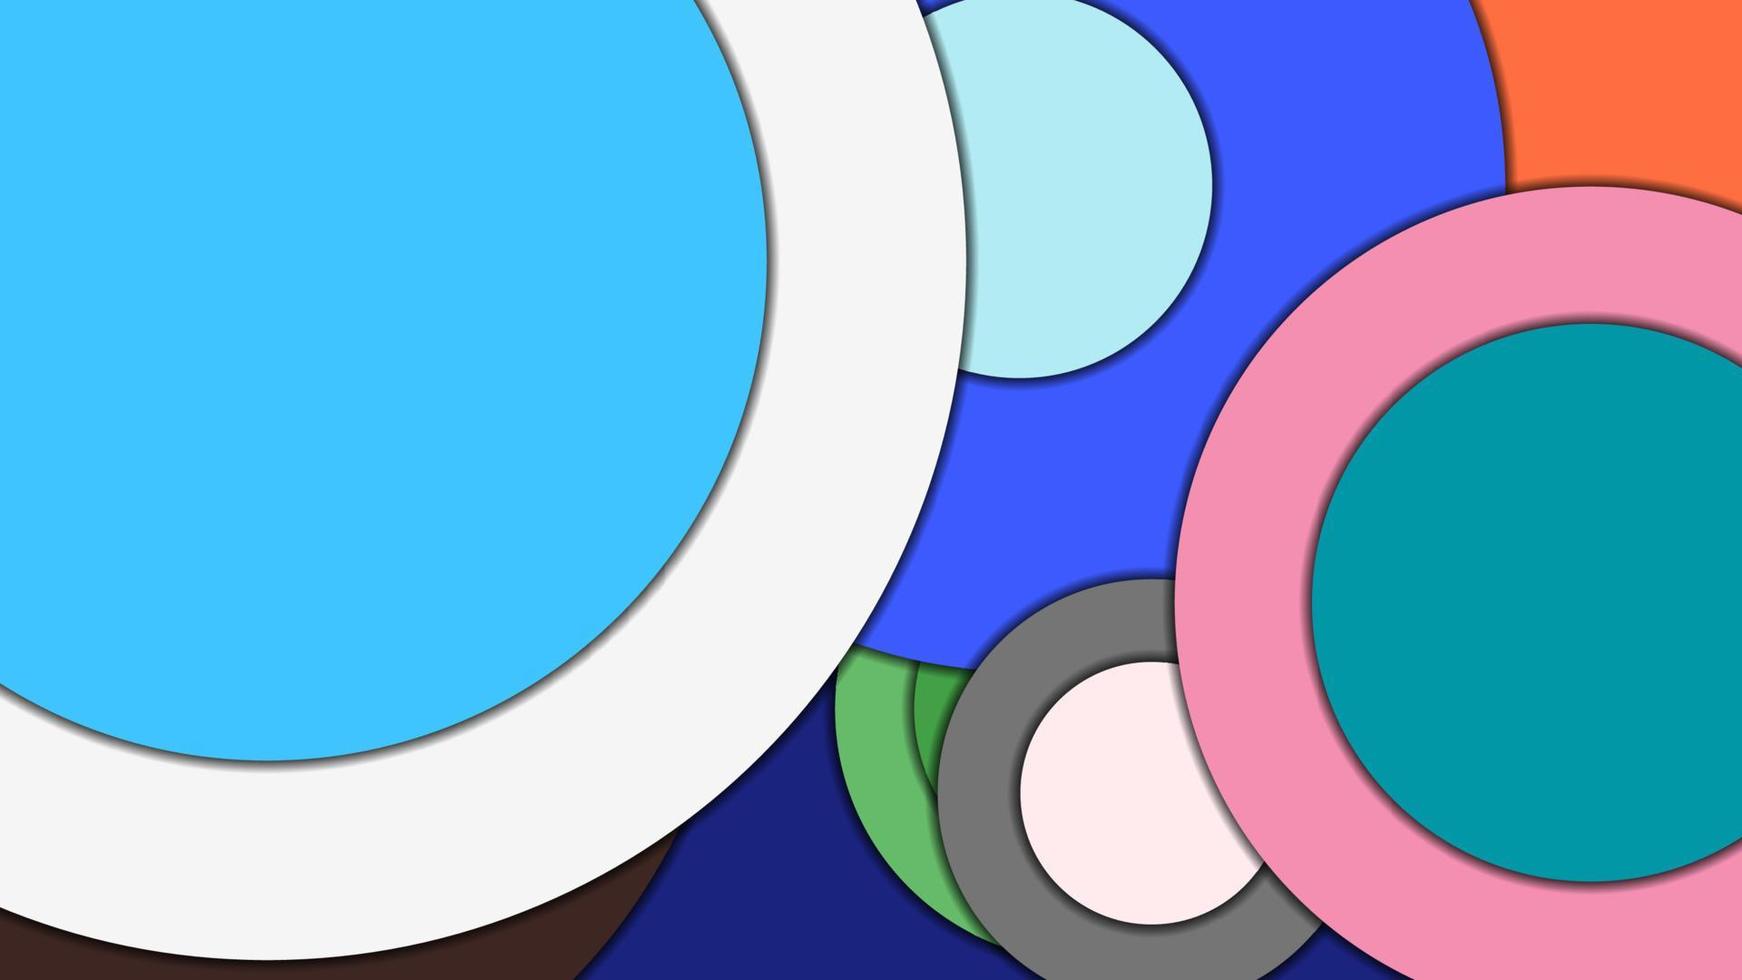 sfondo vettoriale colorato geometrico astratto in stile design materiale con cerchi concentrici e rettangoli ruotati con ombre, imitando la carta tagliata.